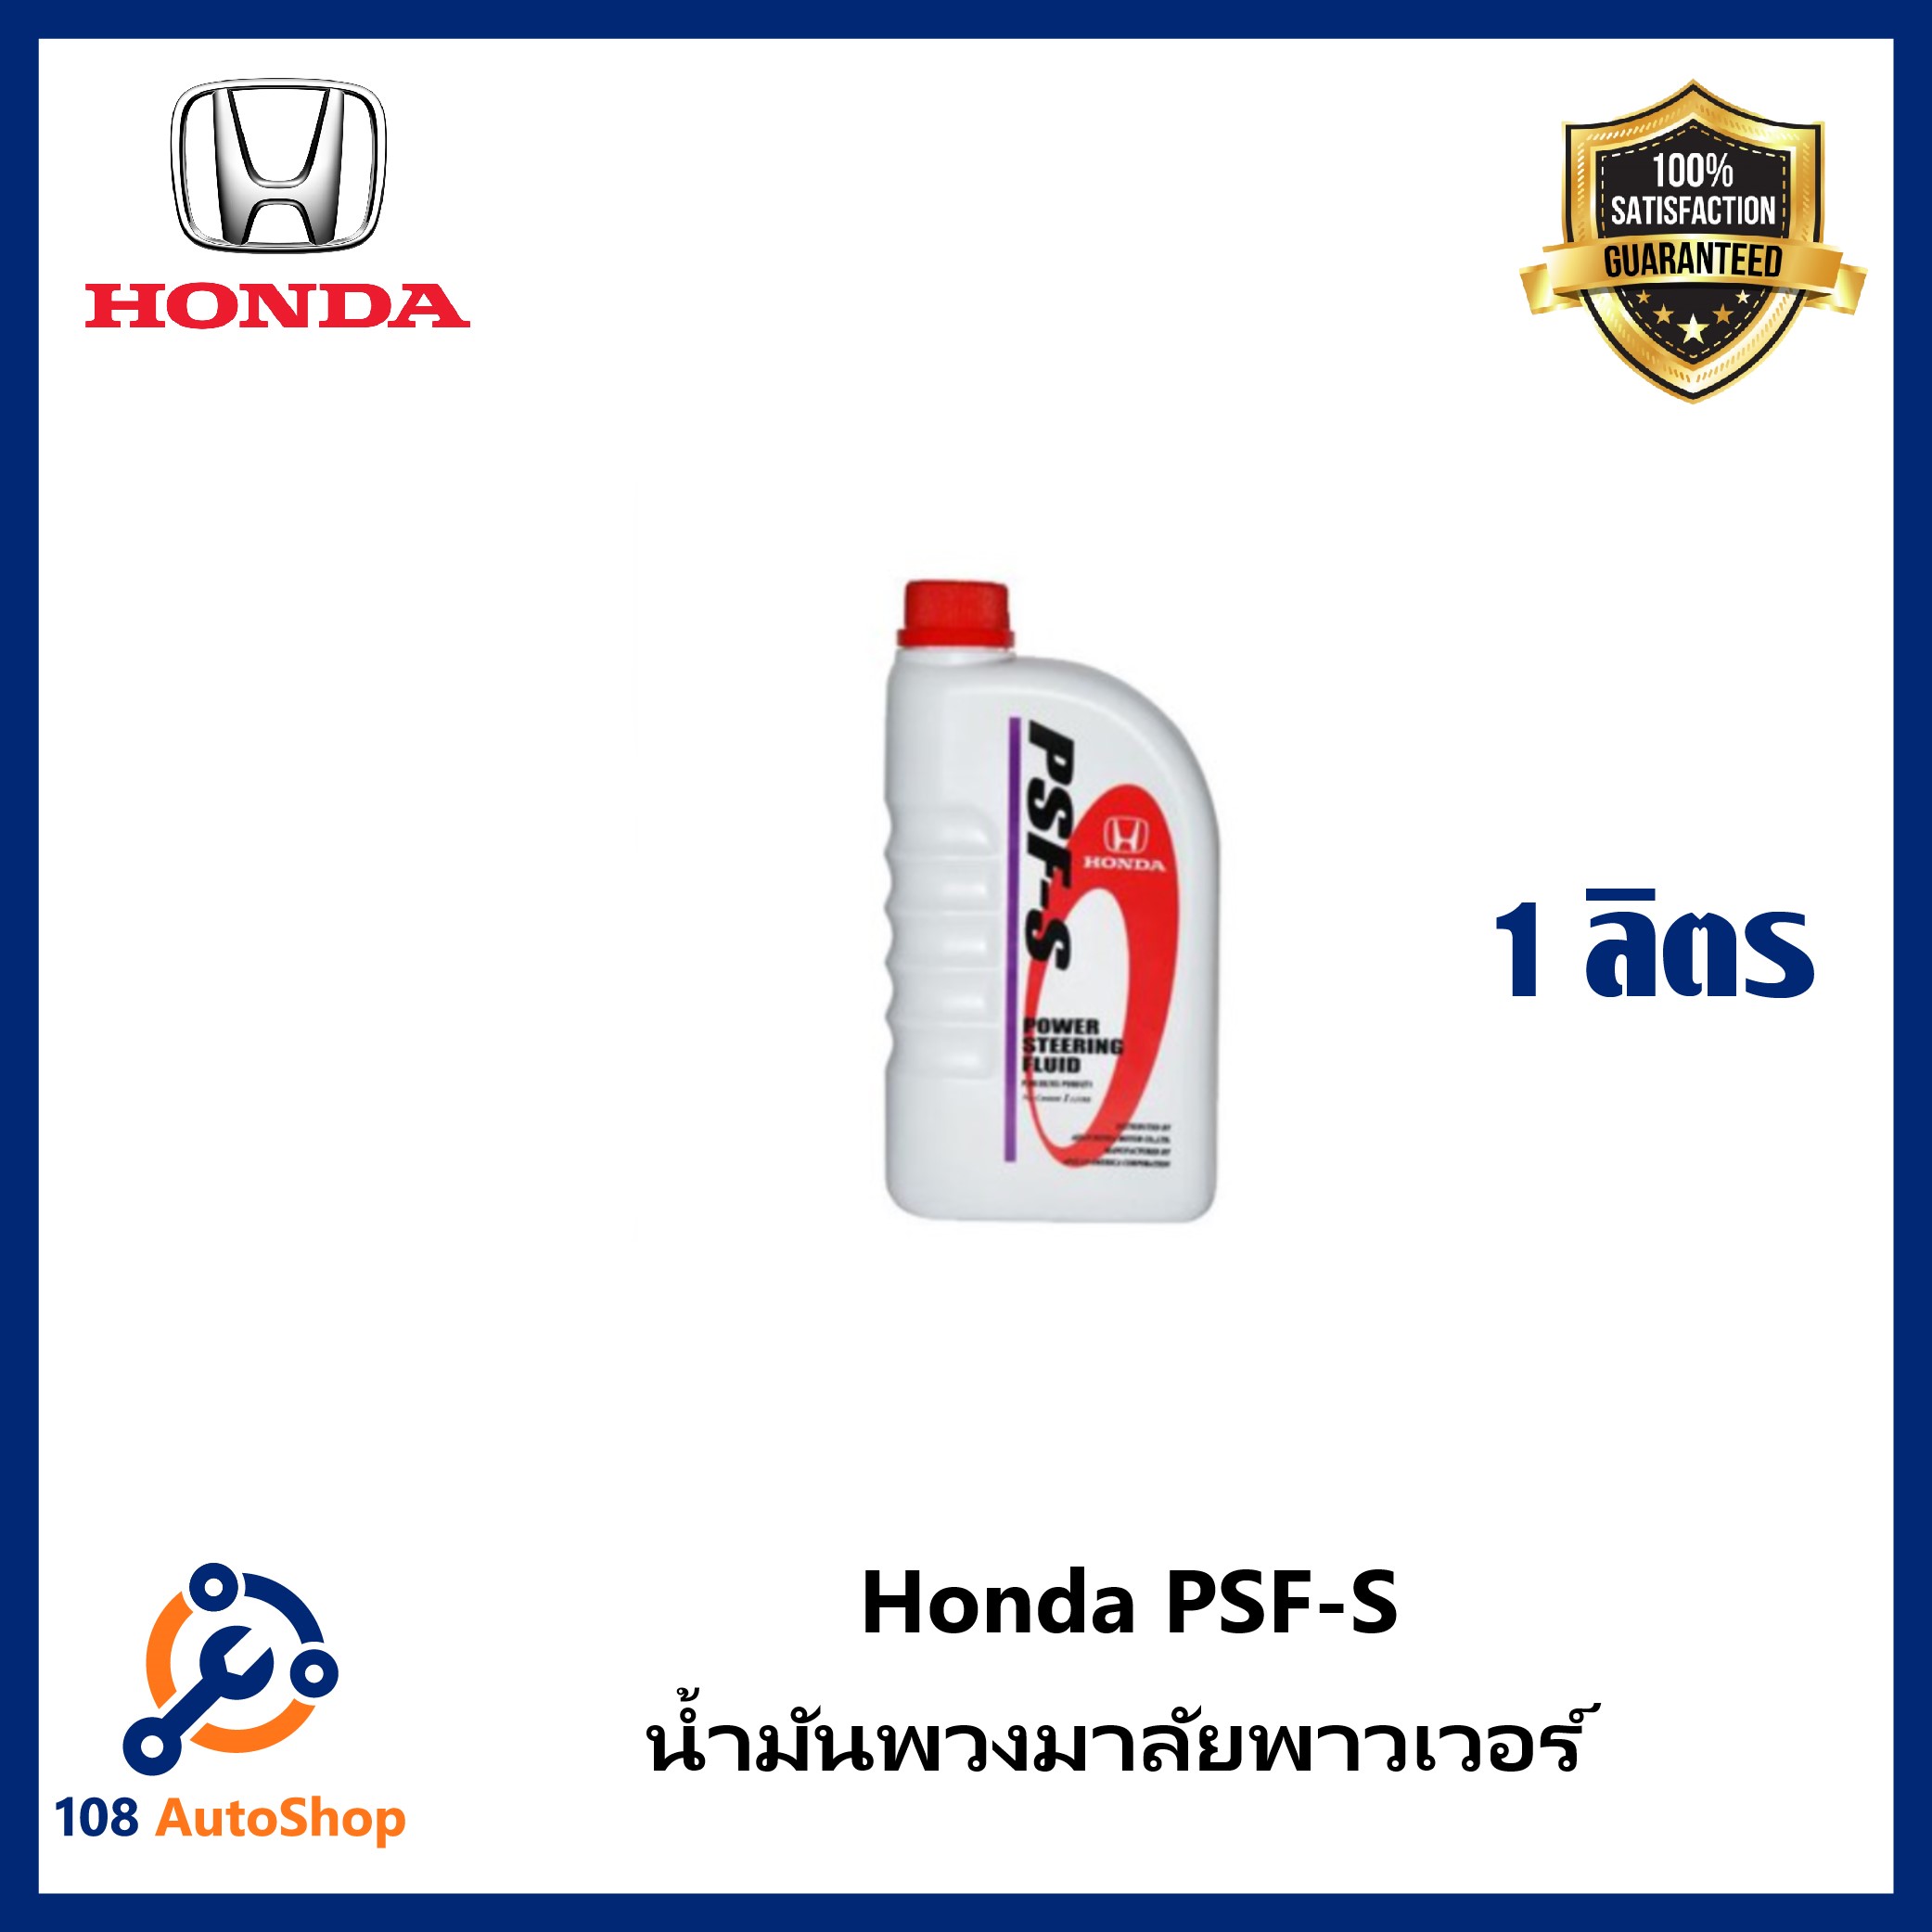 น้ำมันพวงมาลัยพาวเวอร์ Honda Power Steering fluid PSF-S ขนาด 1ลิตร แท้ศูนย์ 100% สำหรับรถ Honda ทุกรุ่น